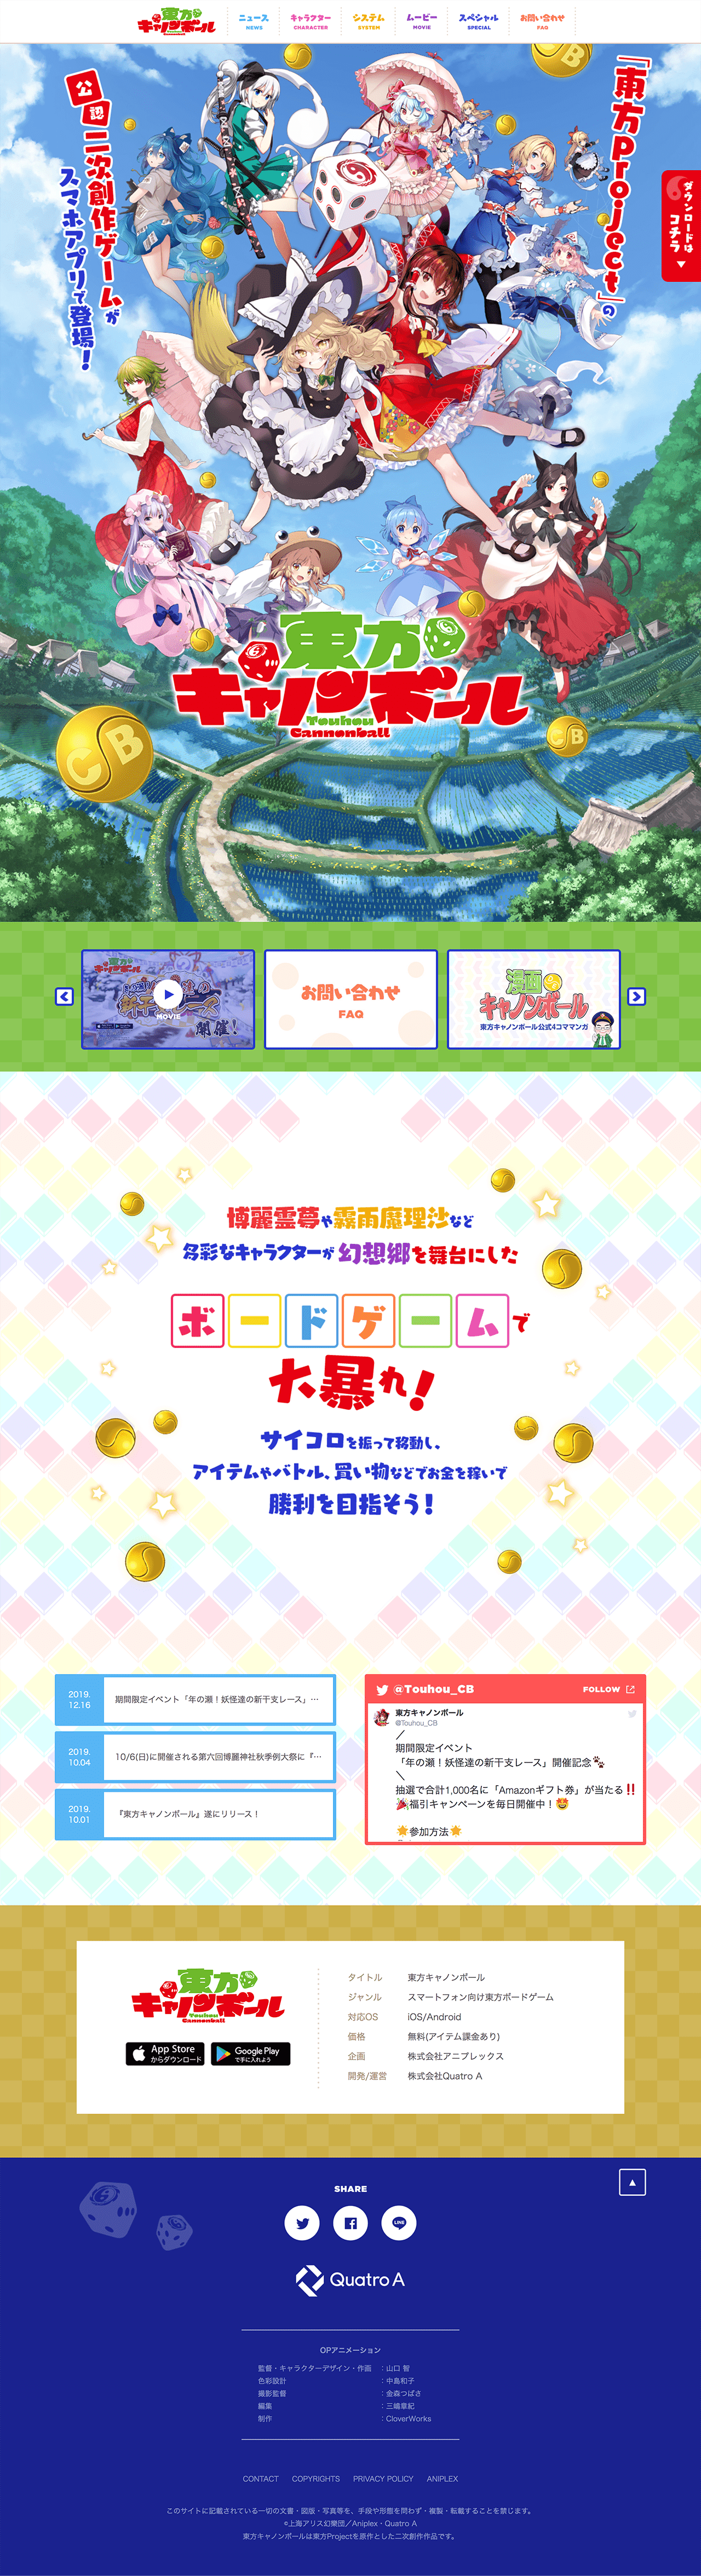 東方キャノンボール 公式サイト Iro 2 Bookmark アニメウェブデザインまとめサイト